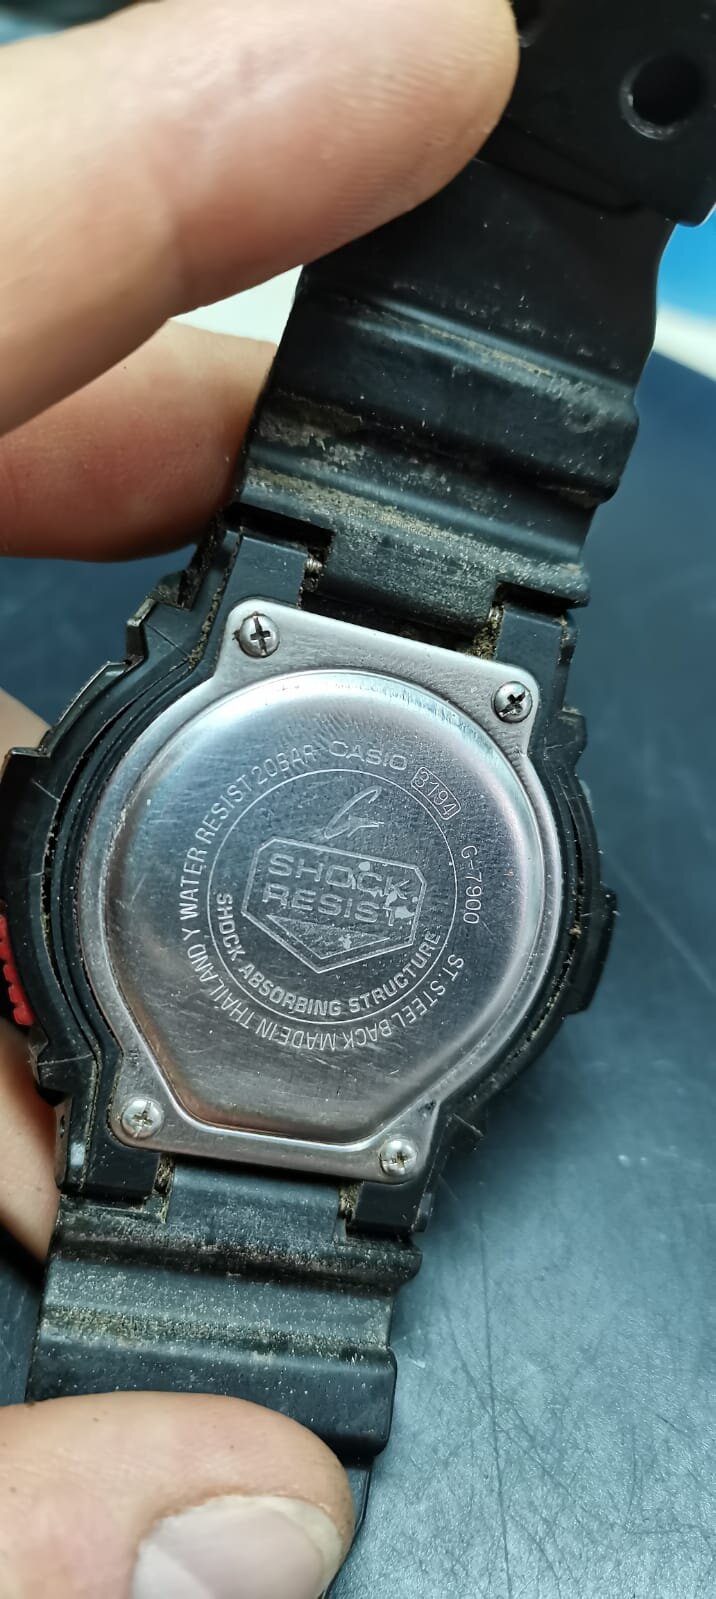 Casio G shock watch G 7900 3194 watch repair nearby.jpeg